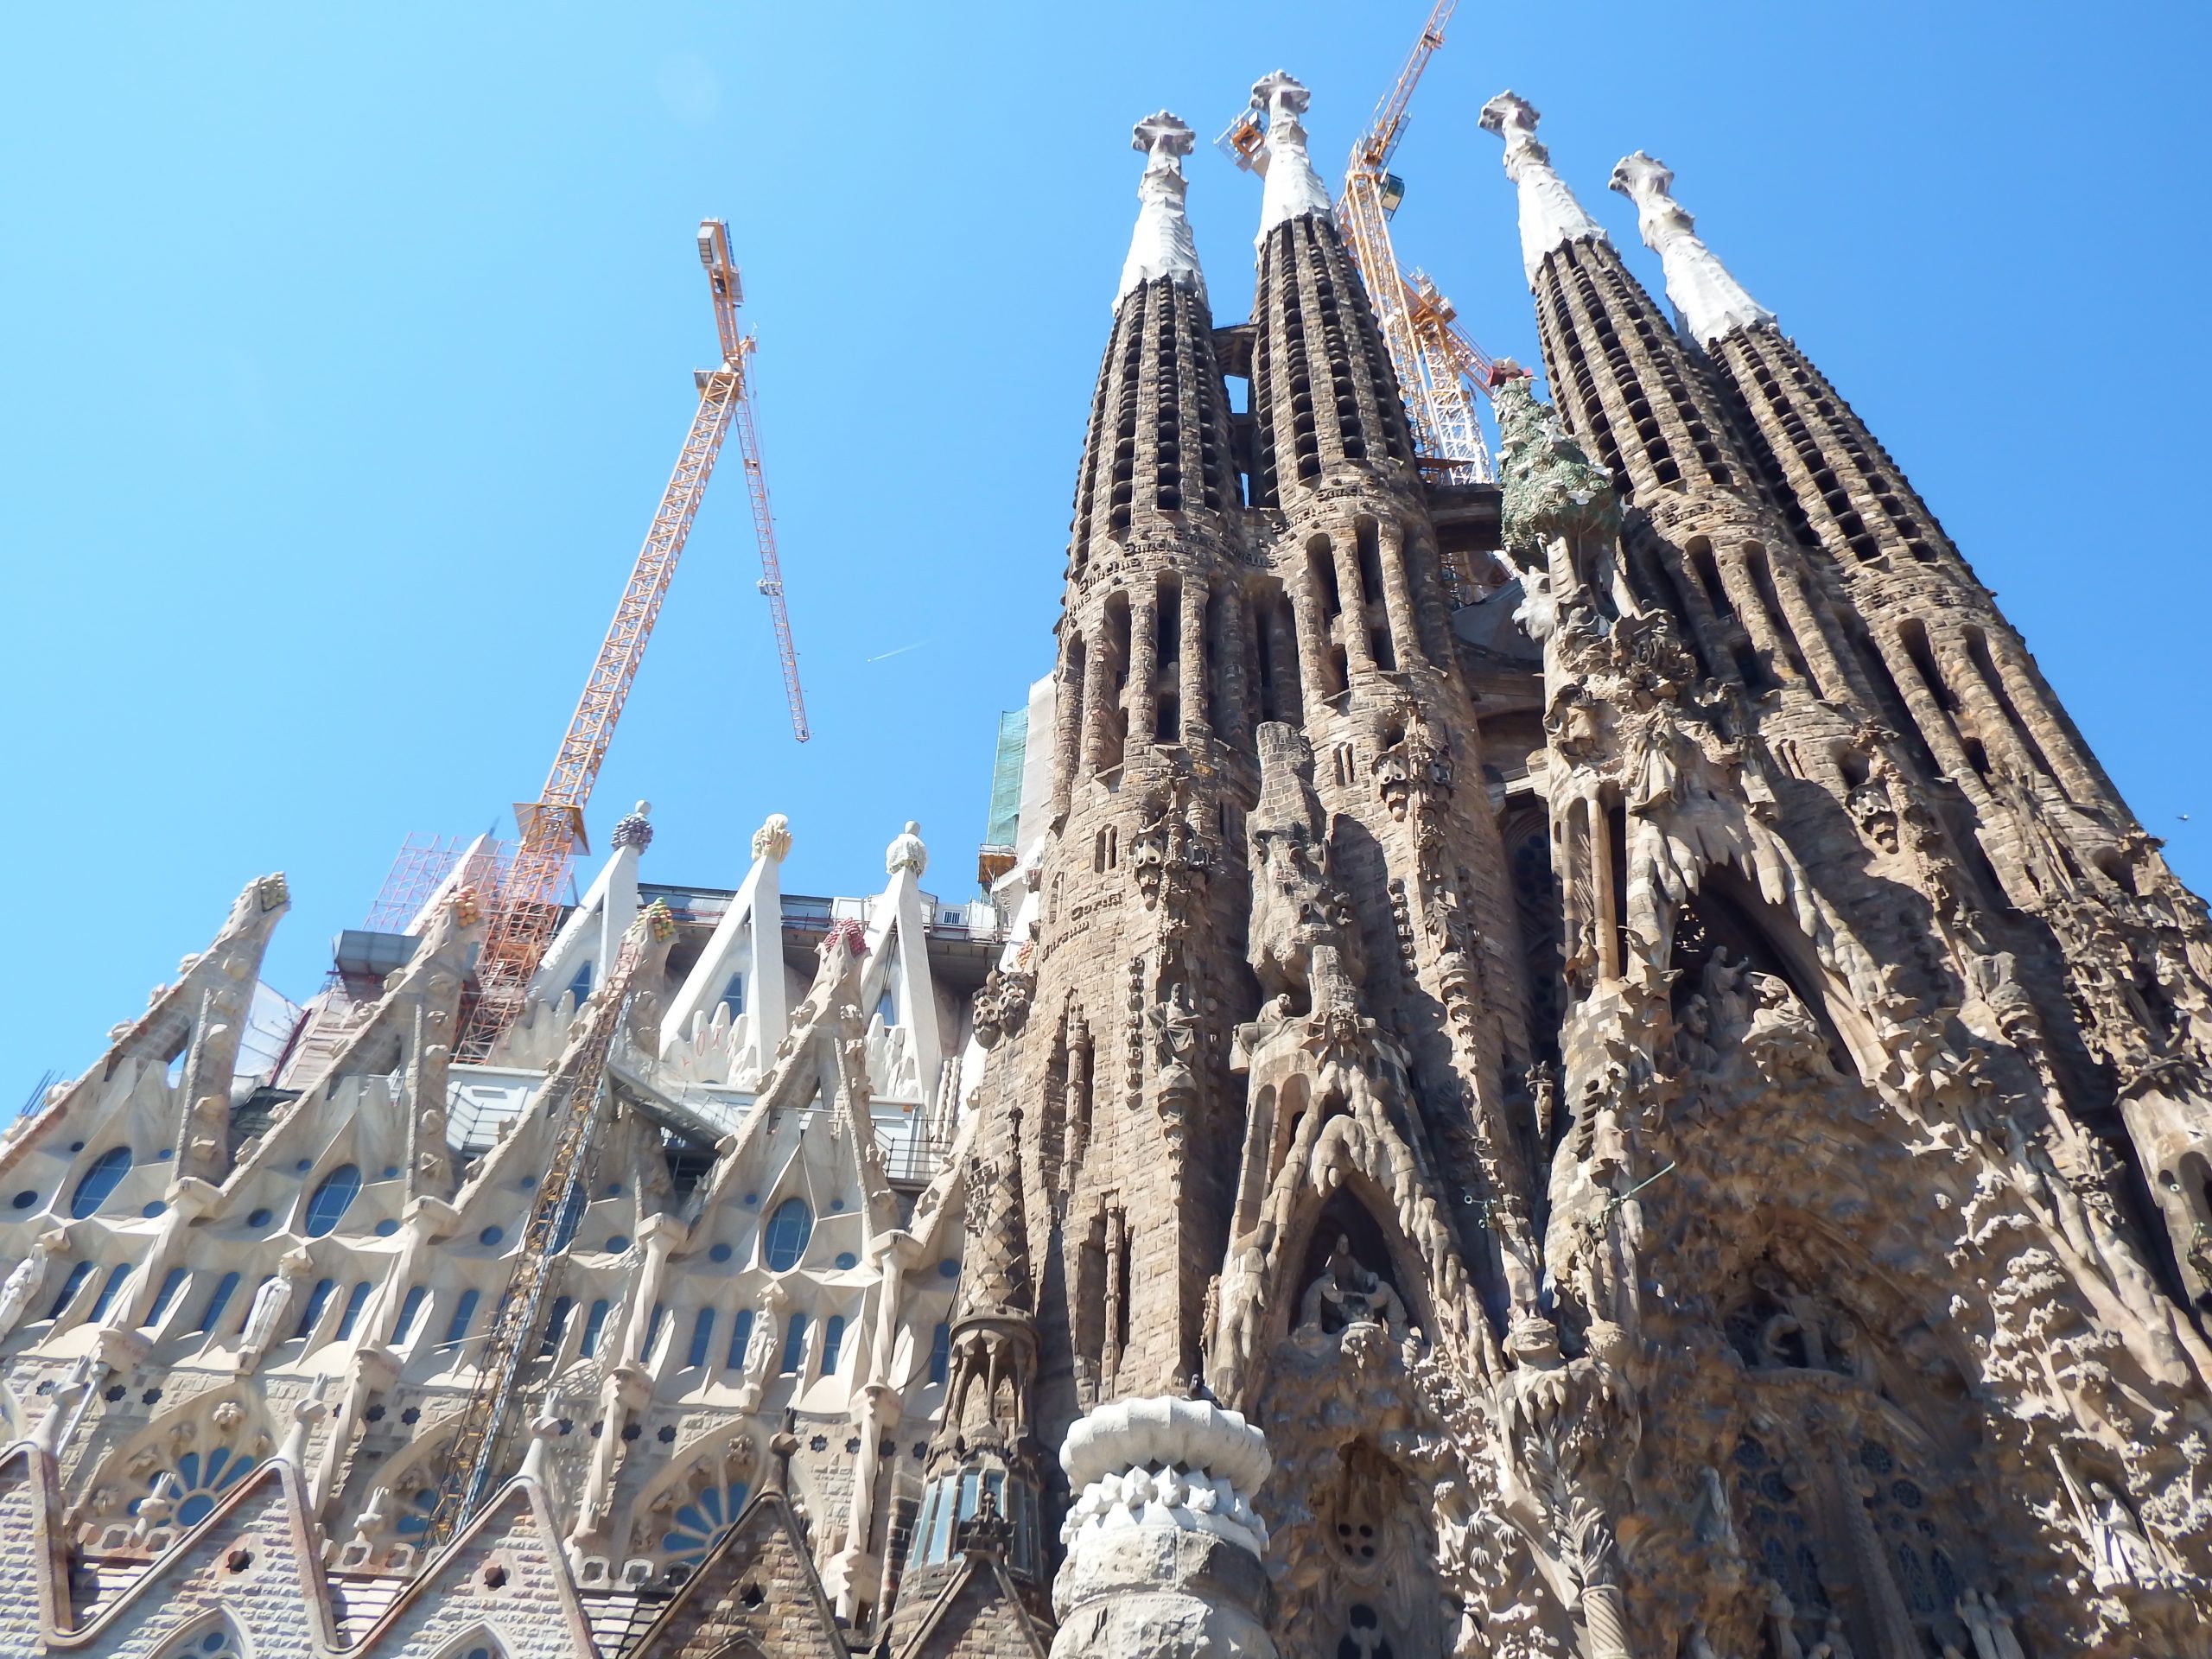 Antoni Gaudî's Sagrada Familia in Barcelona, Spain